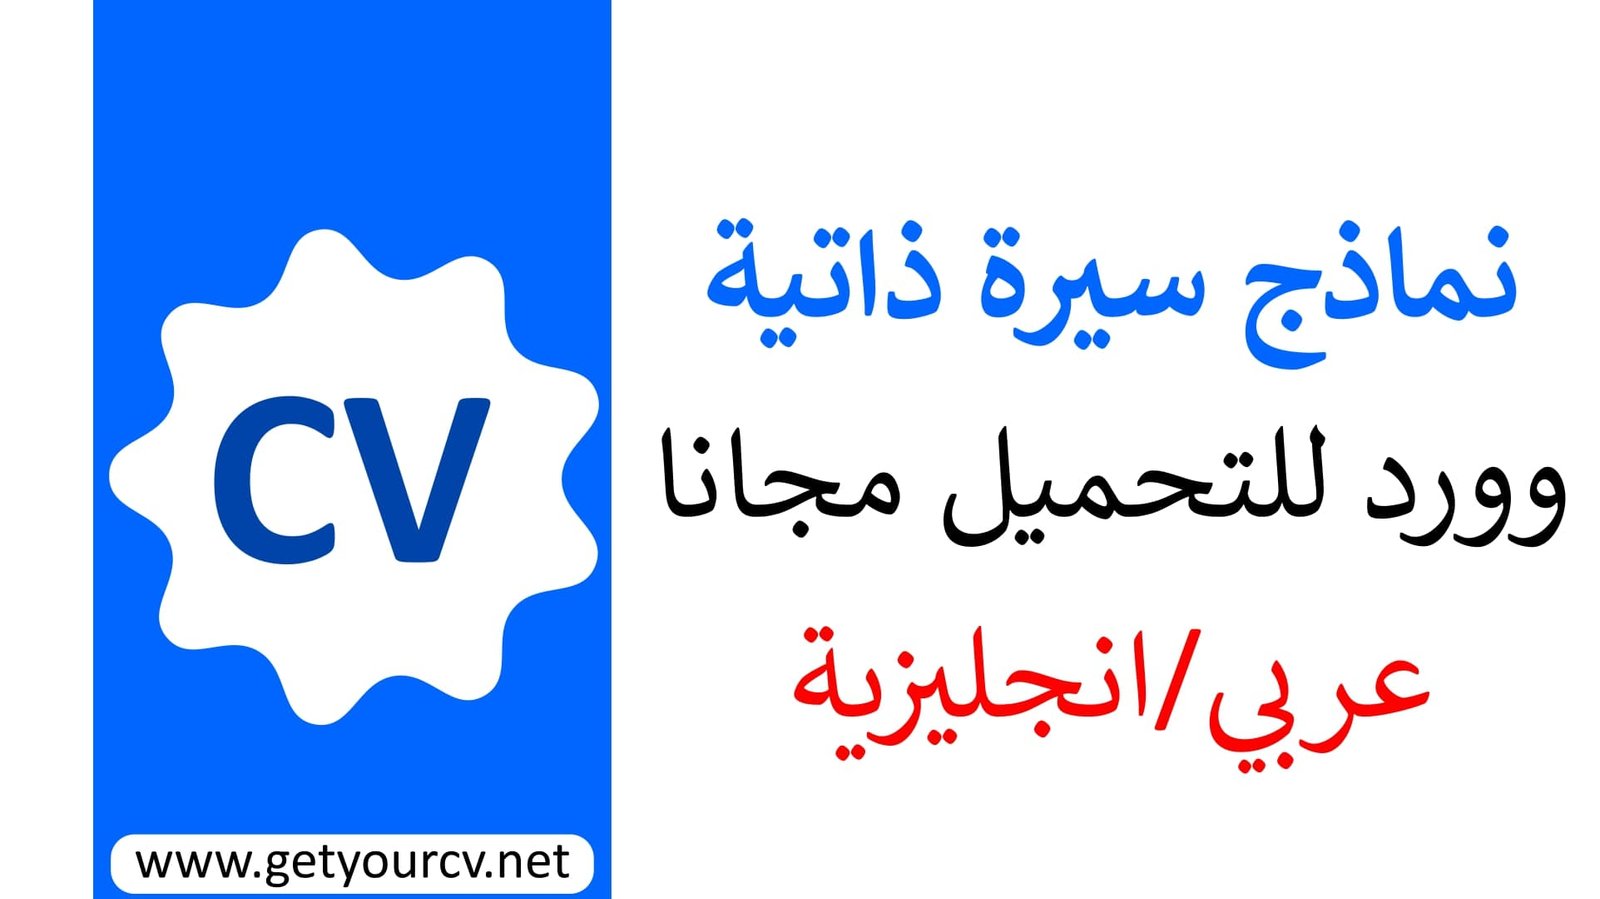 15 نموذج سيرة ذاتية بالعربية word جاهزة للتحميل والتعبئة بسهولة